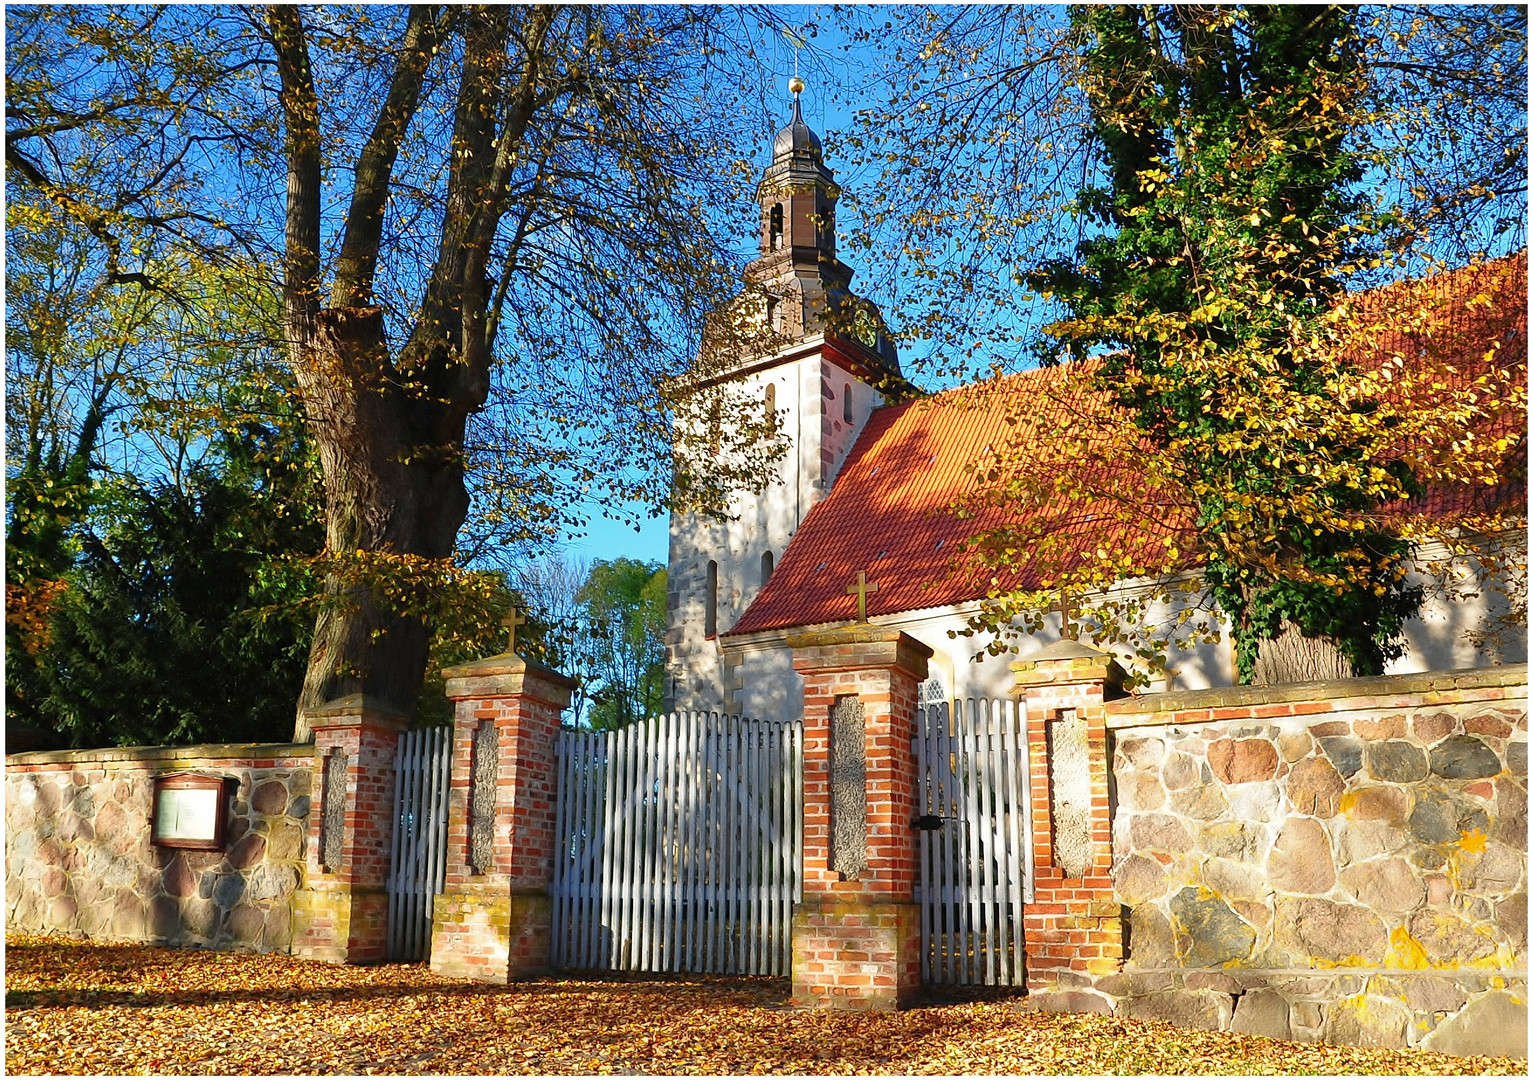 St. Andreas Kirche in Nehringen